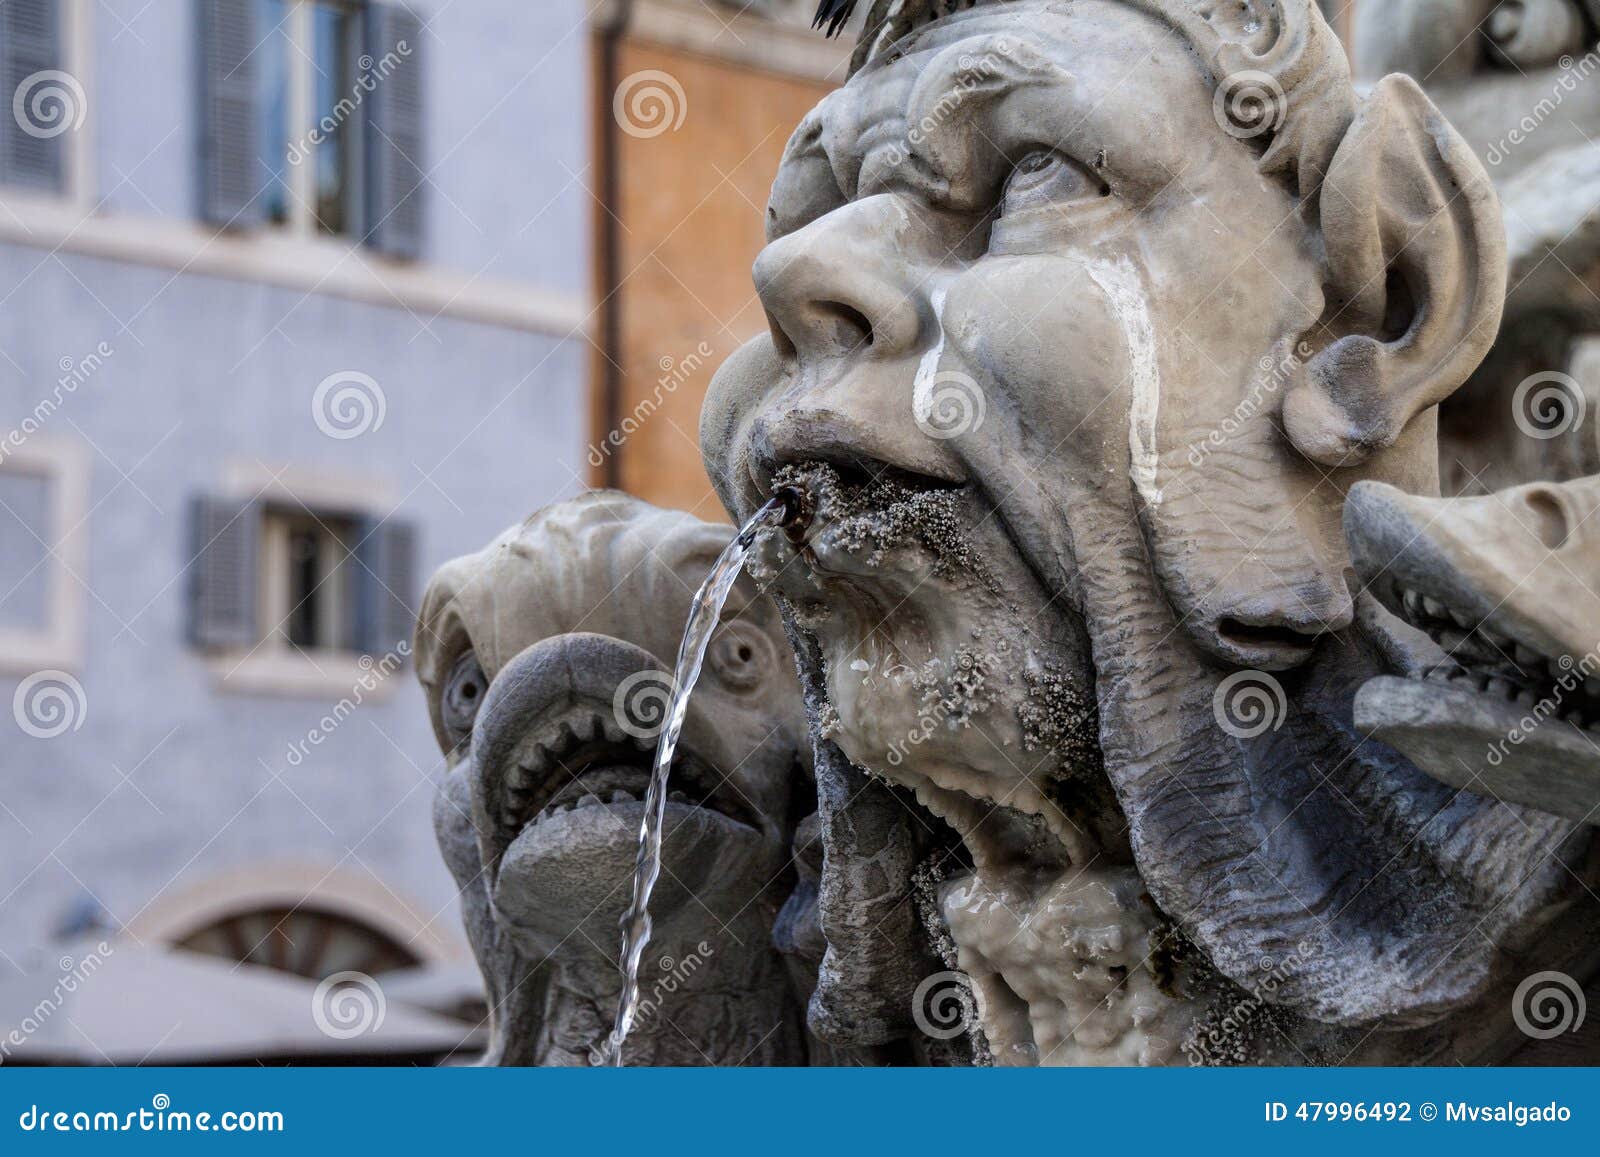 fountain detail rome